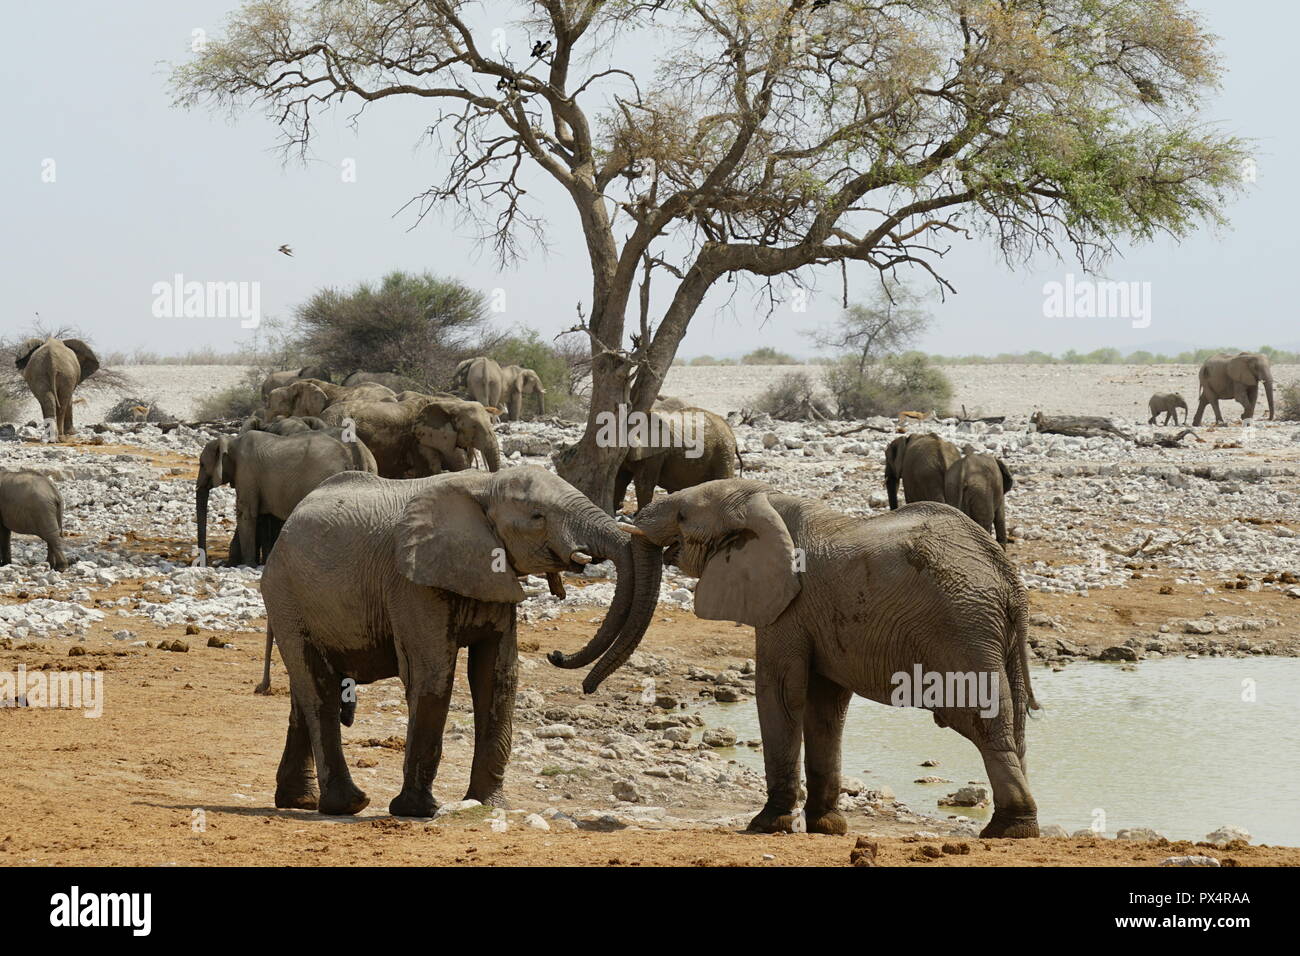 Spielerisch kämpfende junge Elefantenbullen, Okaukuejo Wasserloch, Etosha Nationalpark, Namibia, Afrika Foto Stock